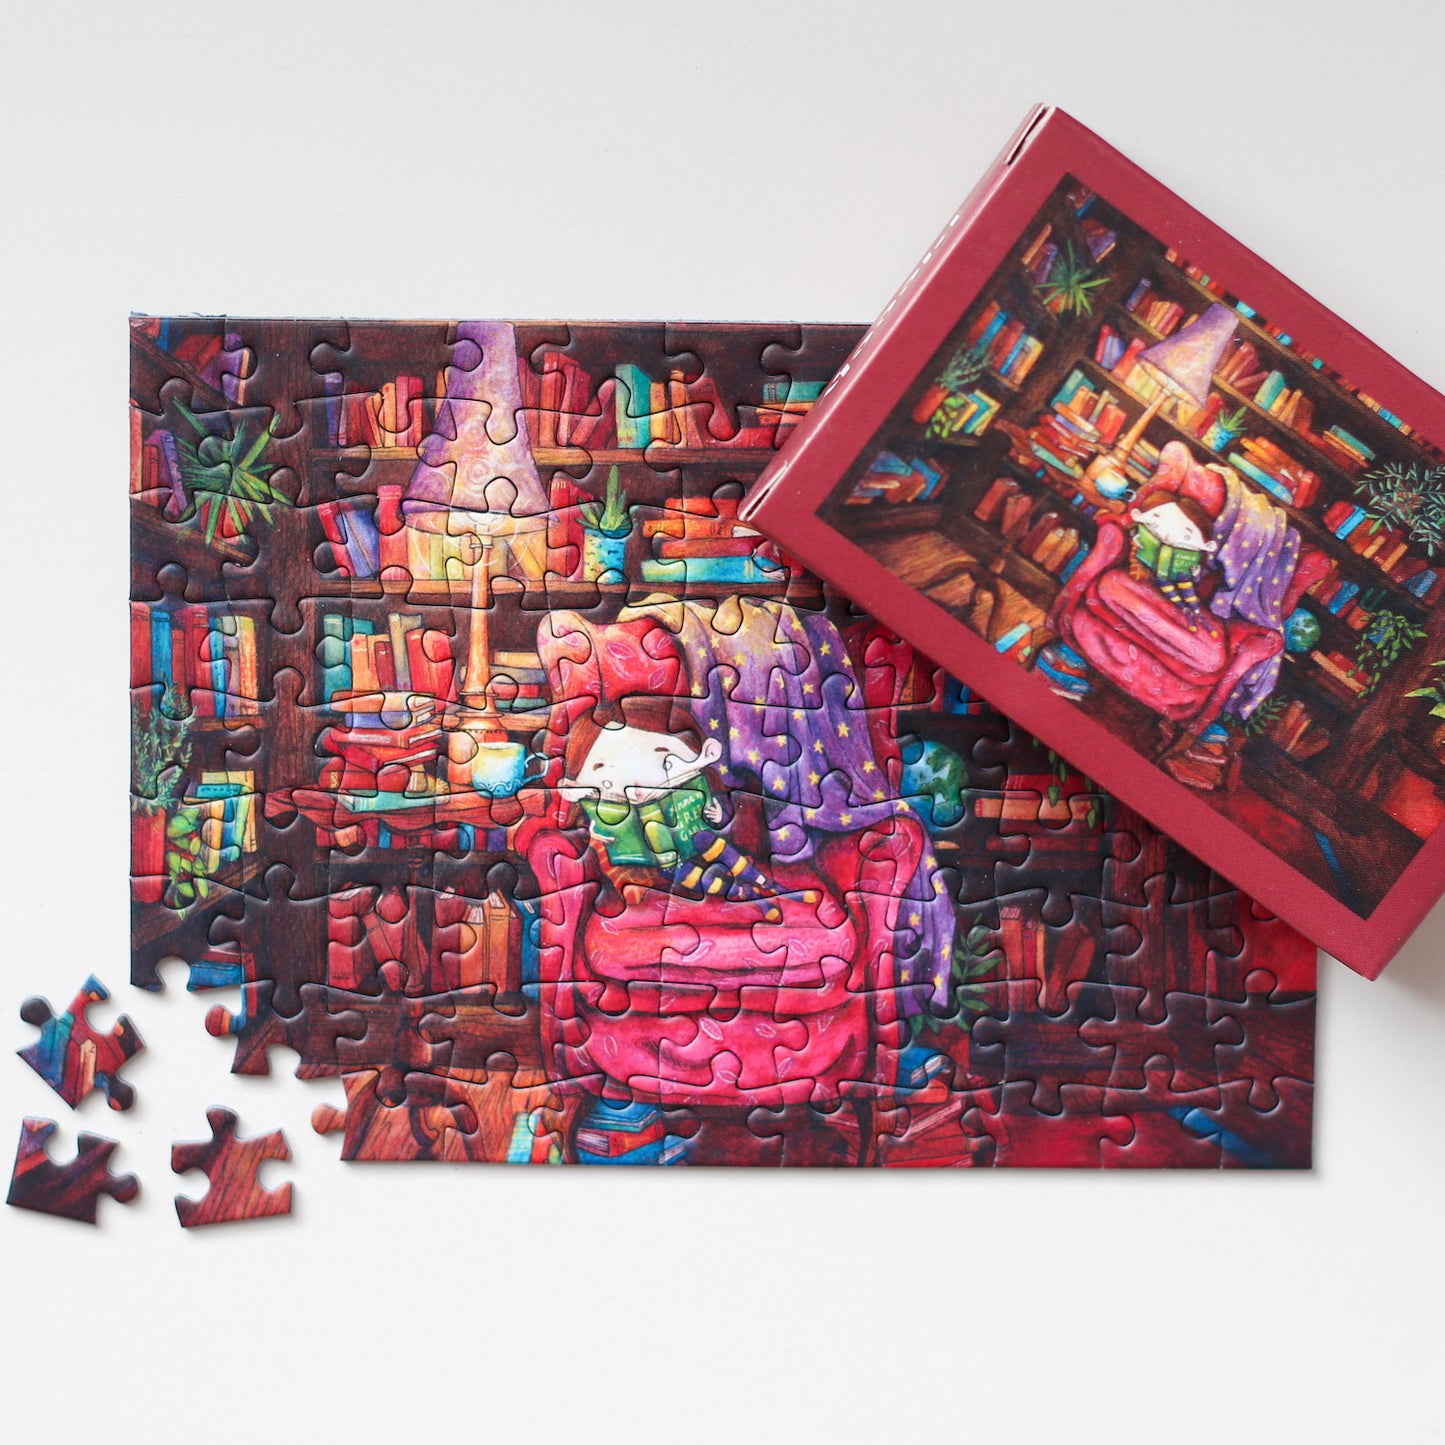 99-teiliges Portable Magic Minipuzzle für Erwachsene, das ein kleines Mädchen zeigt, wie es umgeben von prall gefüllten Bücherregalen auf einem Sessel sitzt und ein Buch liest.